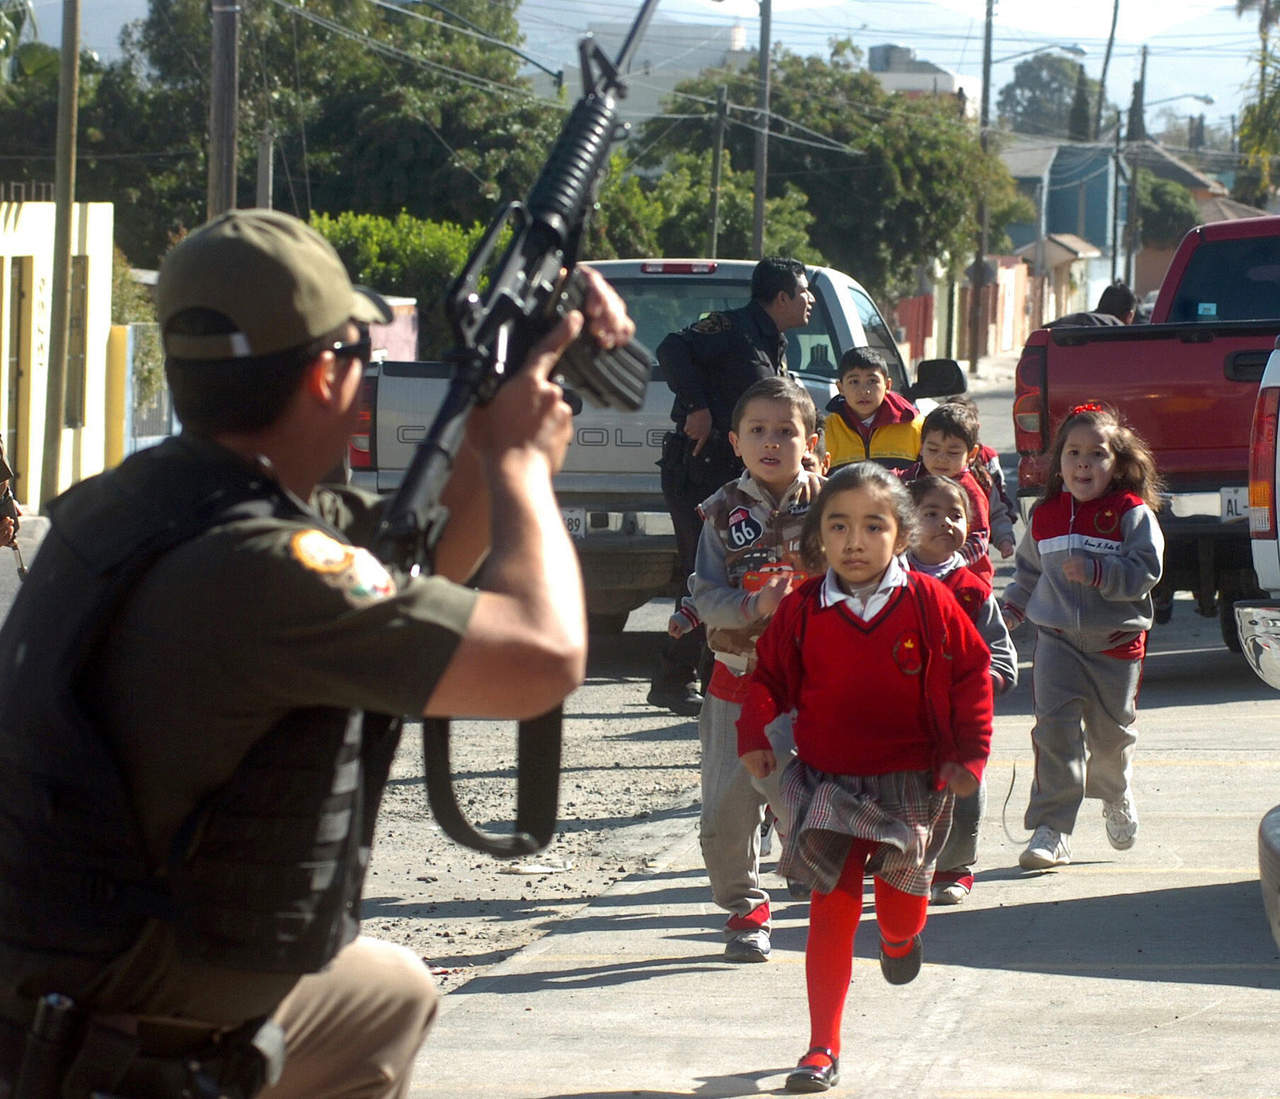  Tamaulipas podría no tener el grado de violencia que se vive en algunas partes del estado si no ingresaran a territorio tamaulipeco armas provenientes del norte, consideró el gobernador Francisco García Cabeza de Vaca. (ARCHIVO, 2008)